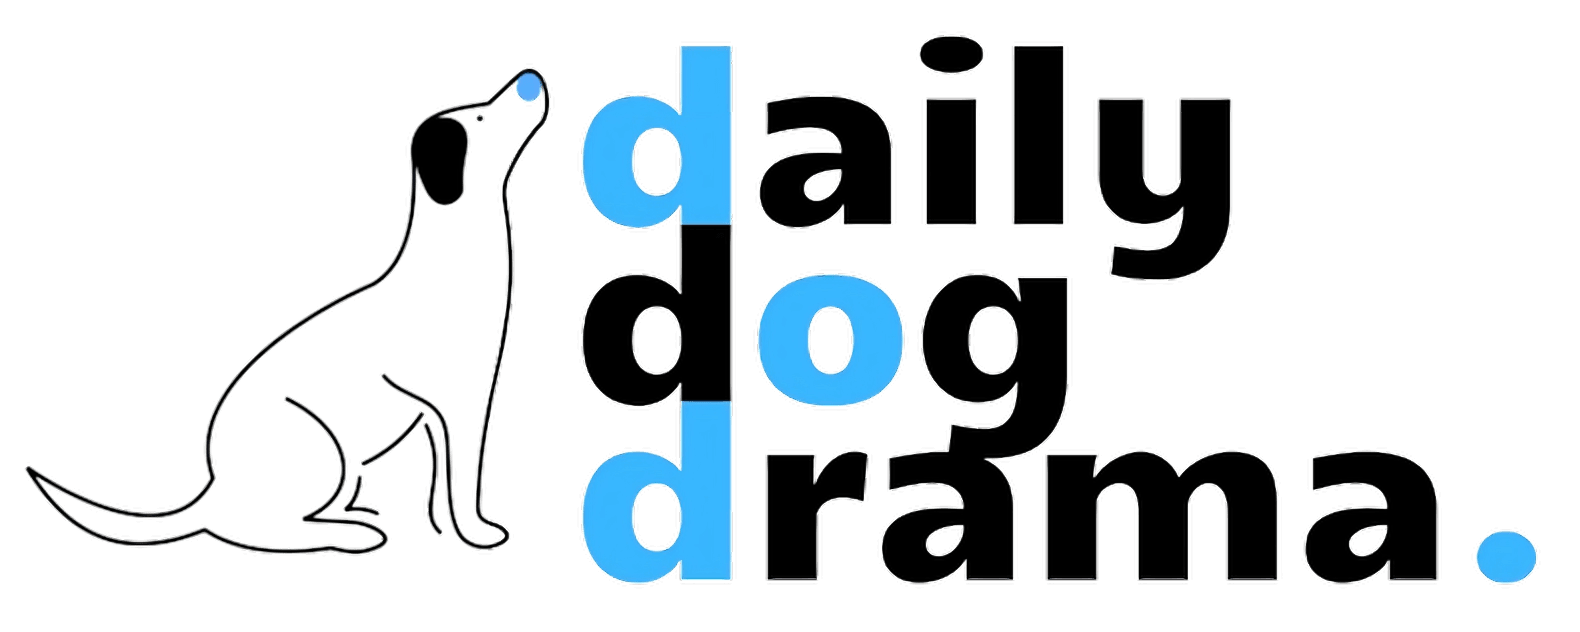 daily_dog_dog_drama_horizontal_logo